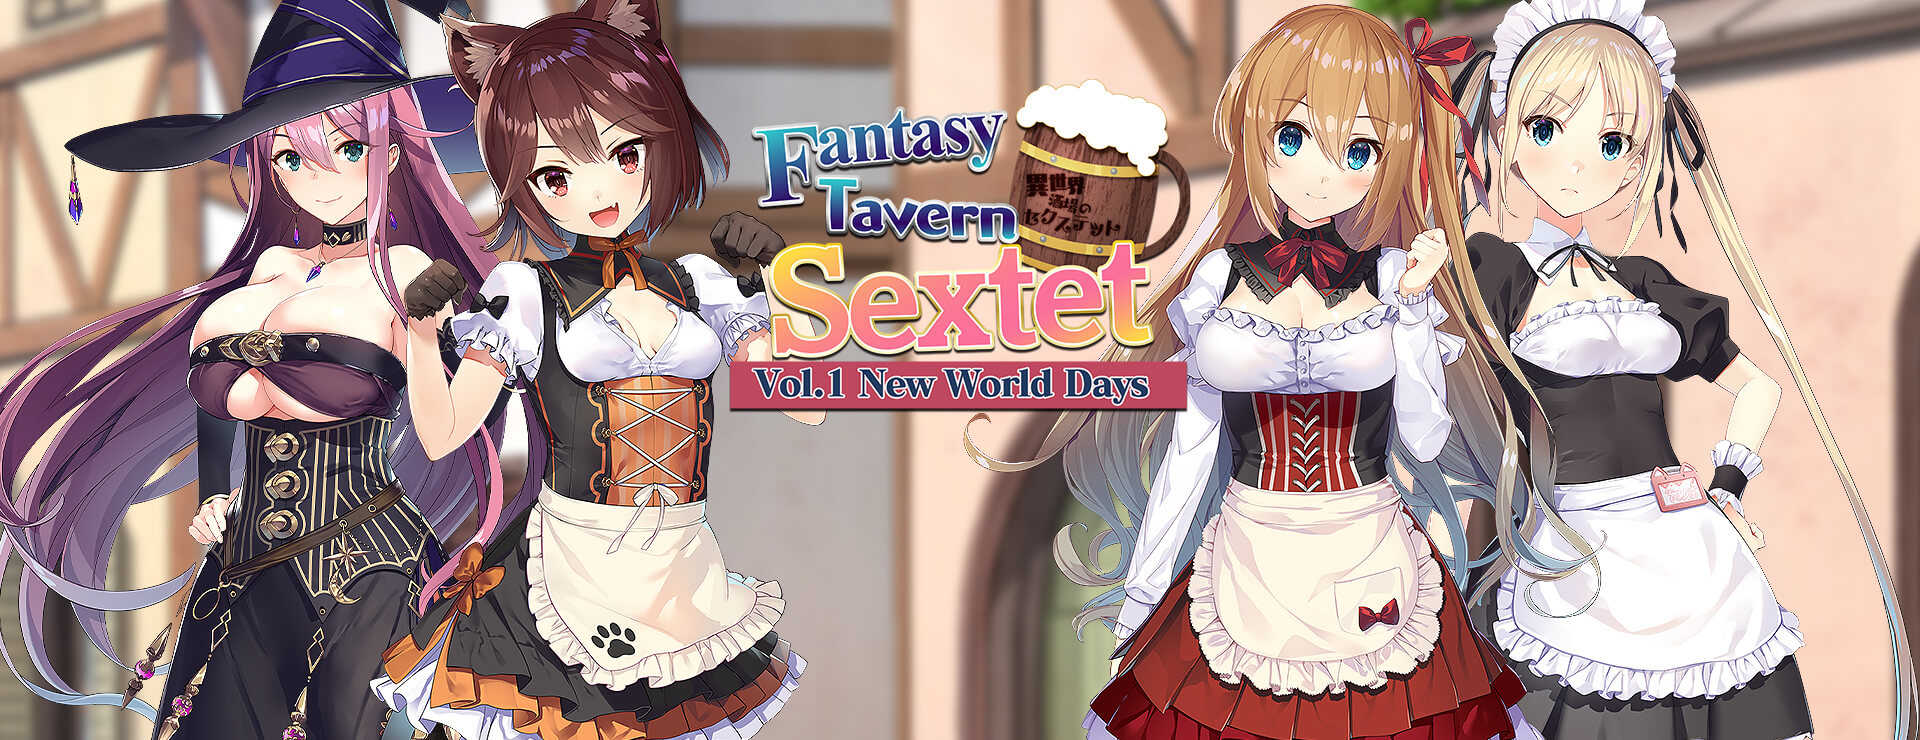 Fantasy Tavern Sextet - Vol.1 New World Days - Japanisches Adventure Spiel